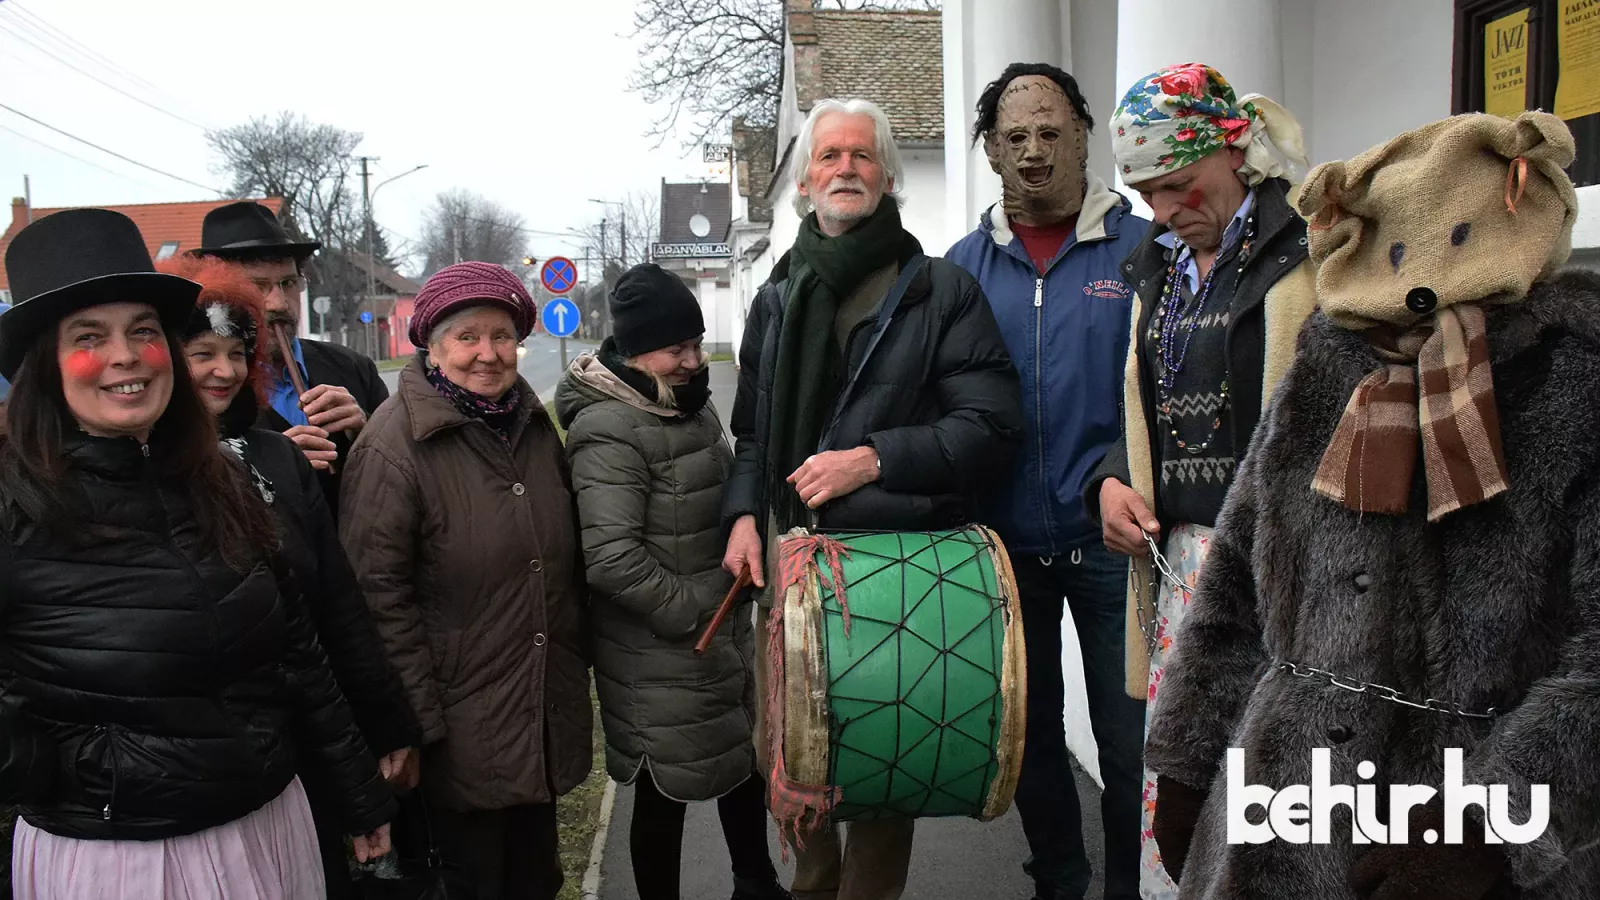 Hagyományőrző farsangi maskarázás a Nemzetiségi Klubházban – Fotó: behir.hu/Such Tamás